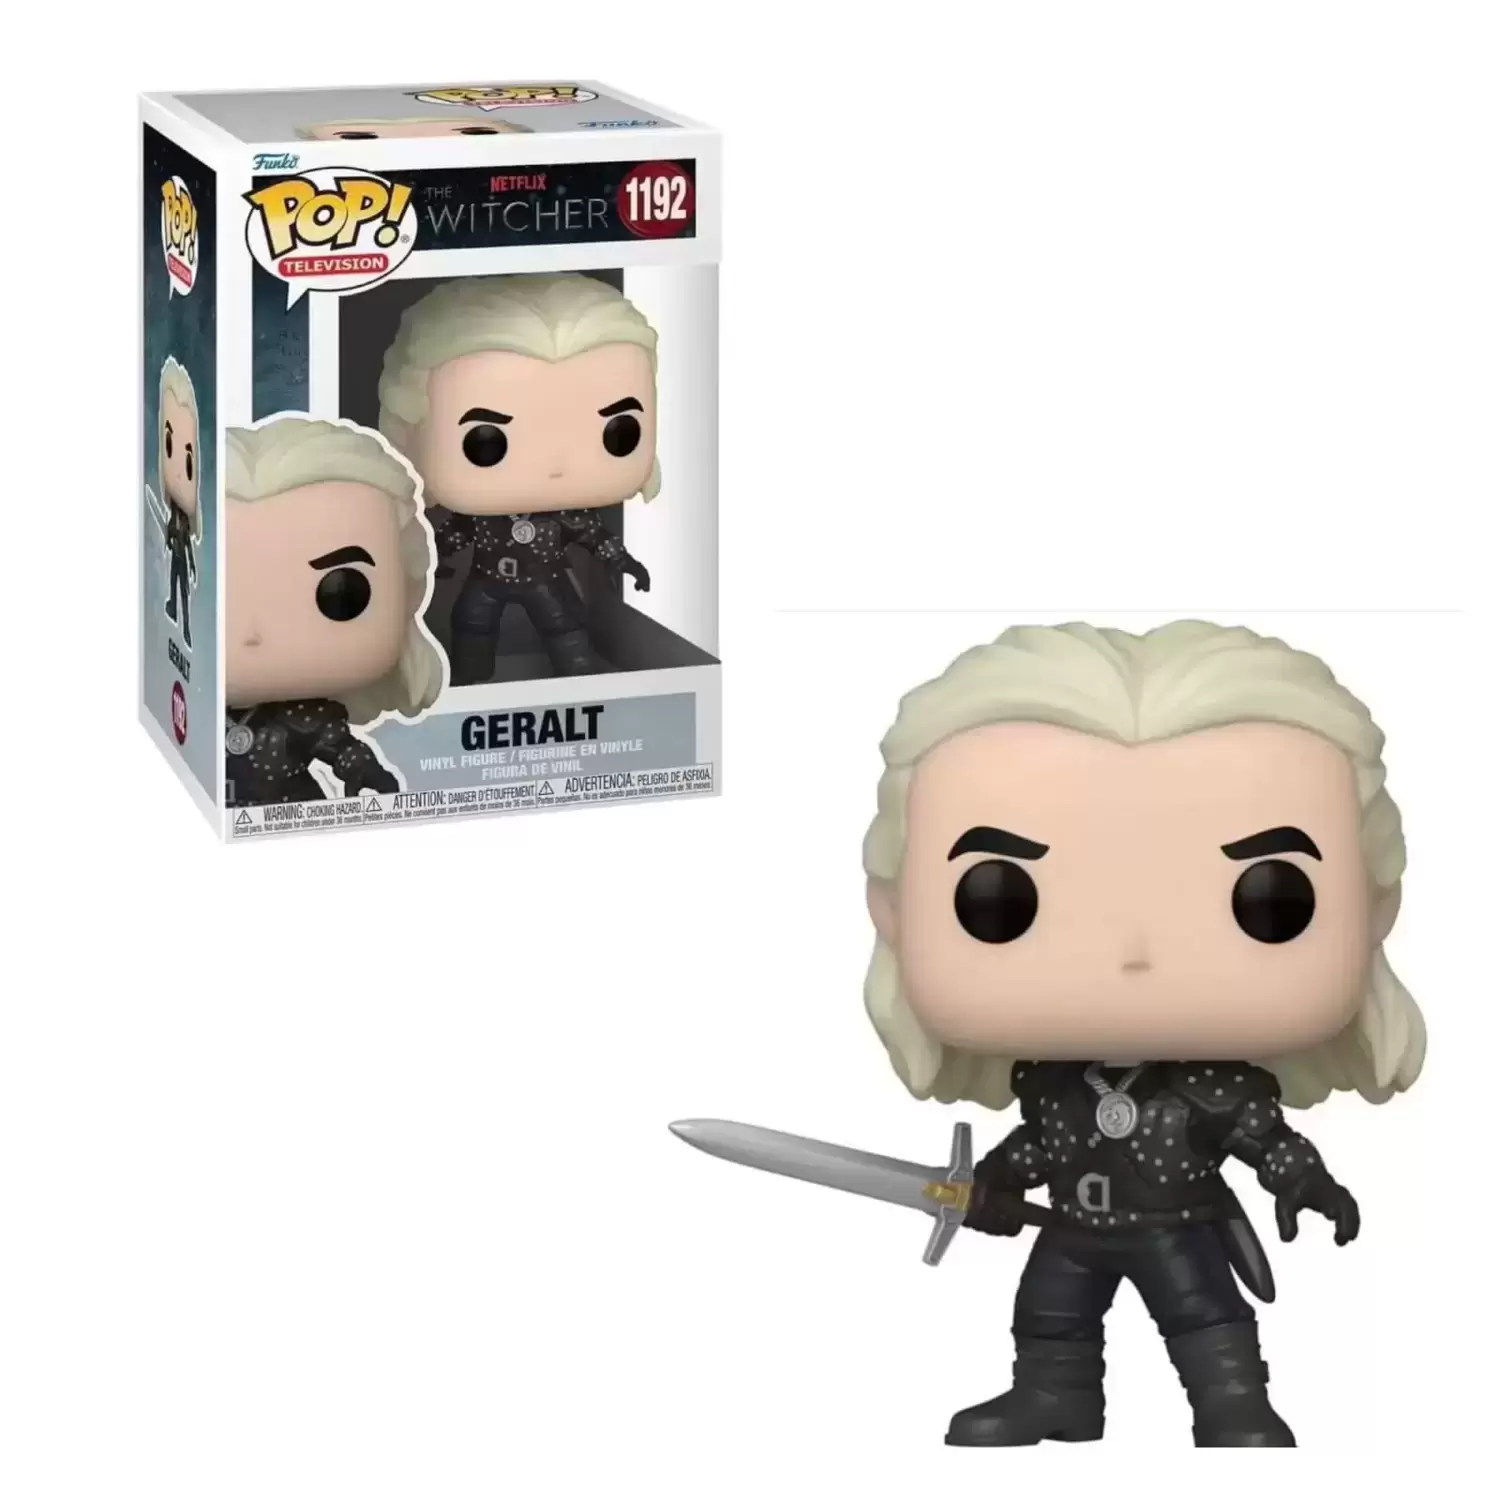 POP! Television - The Witcher Wild Hunt - Geralt